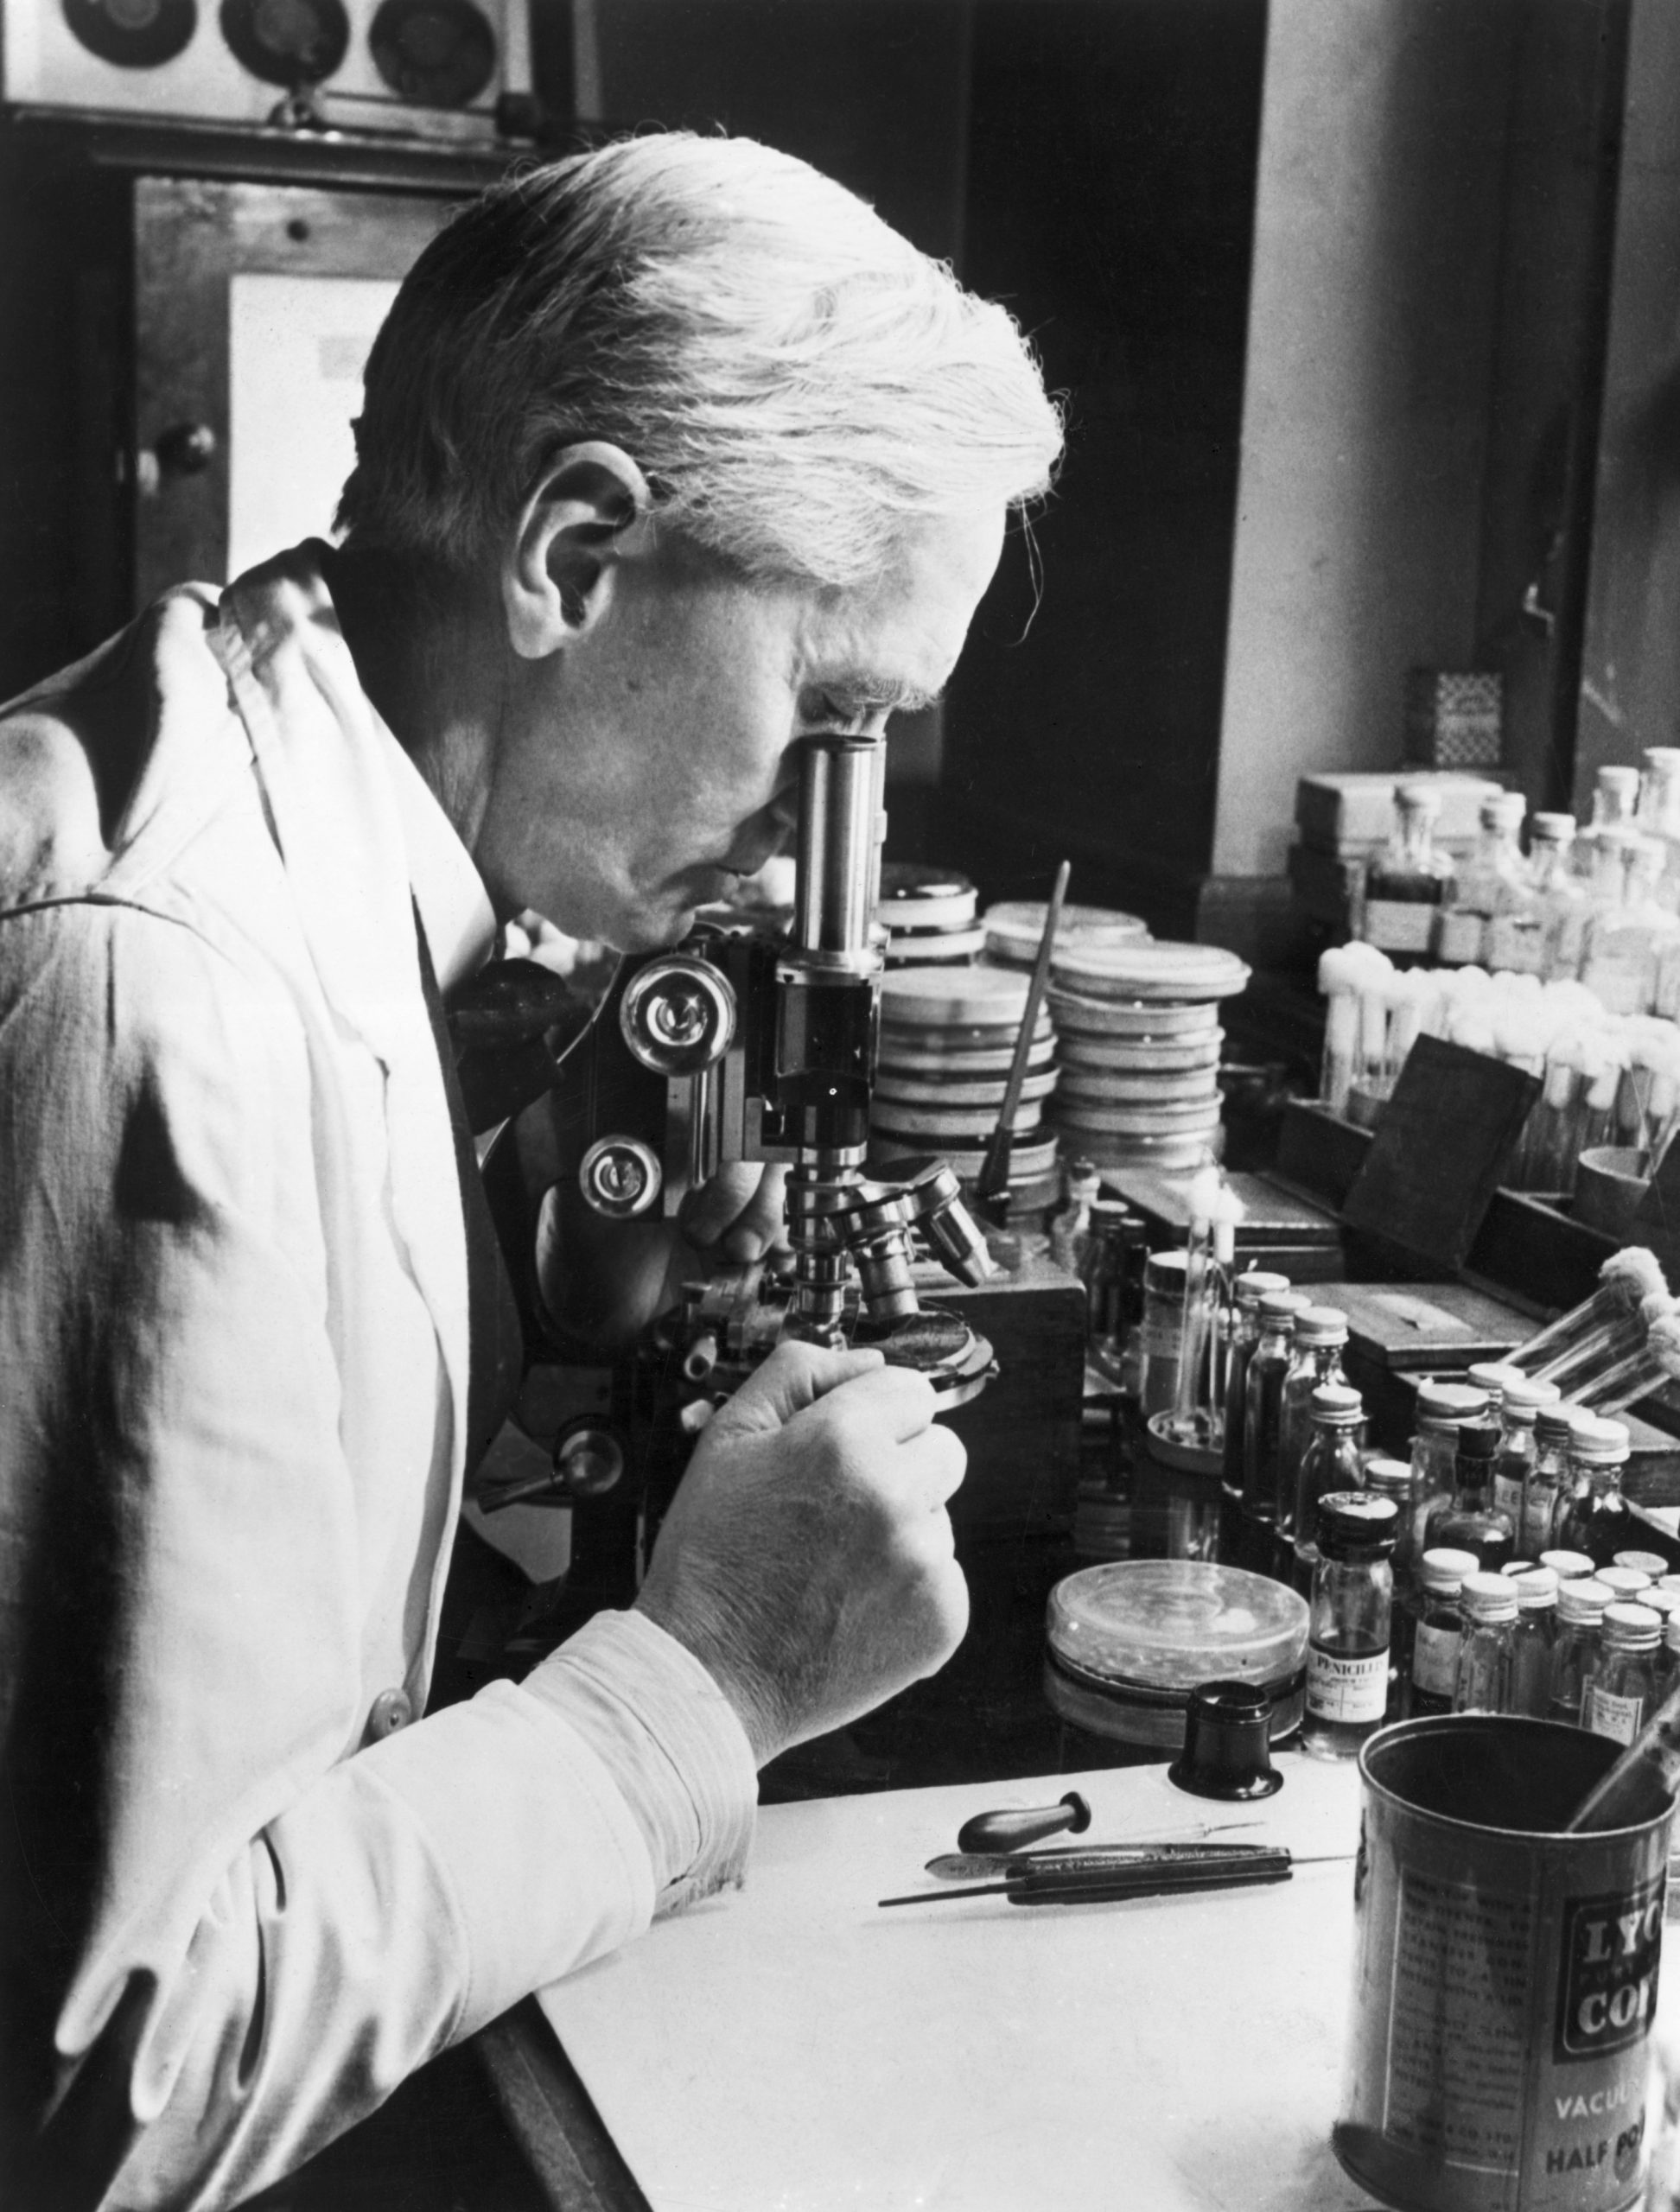 Foto do cientista Alexander Fleming dentro de um laboratório. Ele olha pela lente de um microscópio e ao seu redor há vários instrumentos, tubos de ensaio e placas.